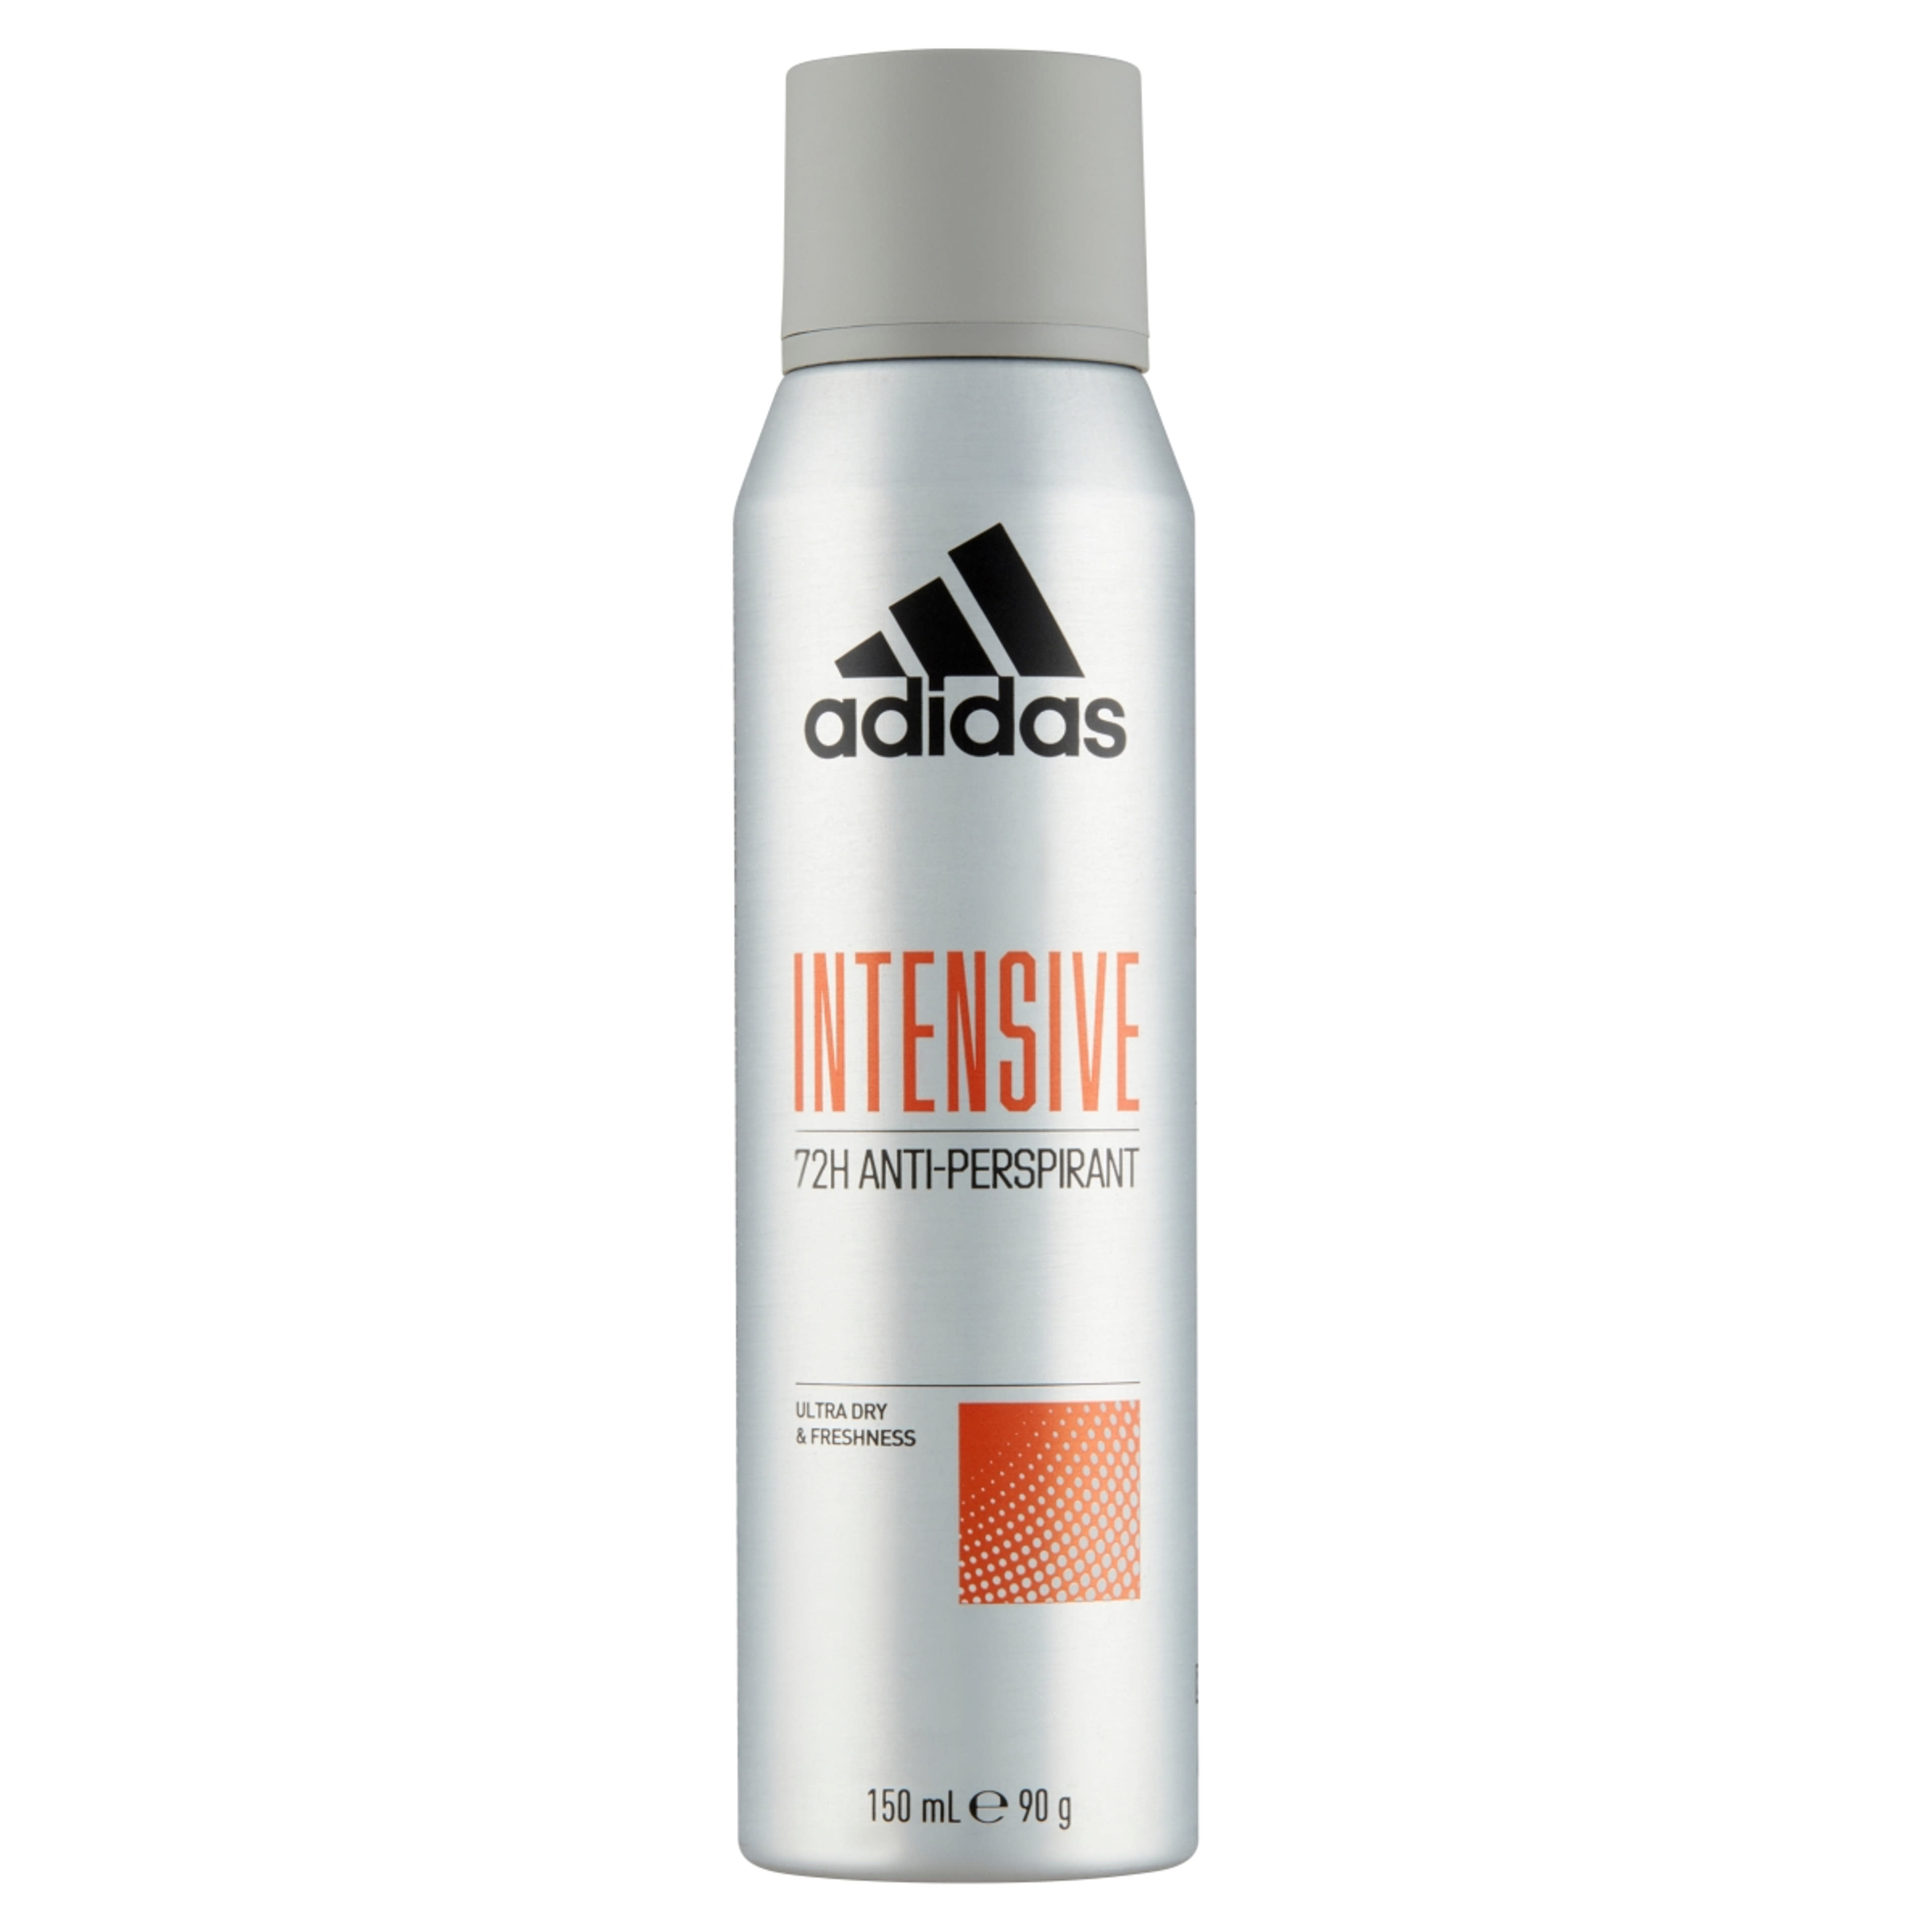 Adidas Intensive férfi izzadásgátló dezodor - 150 ml